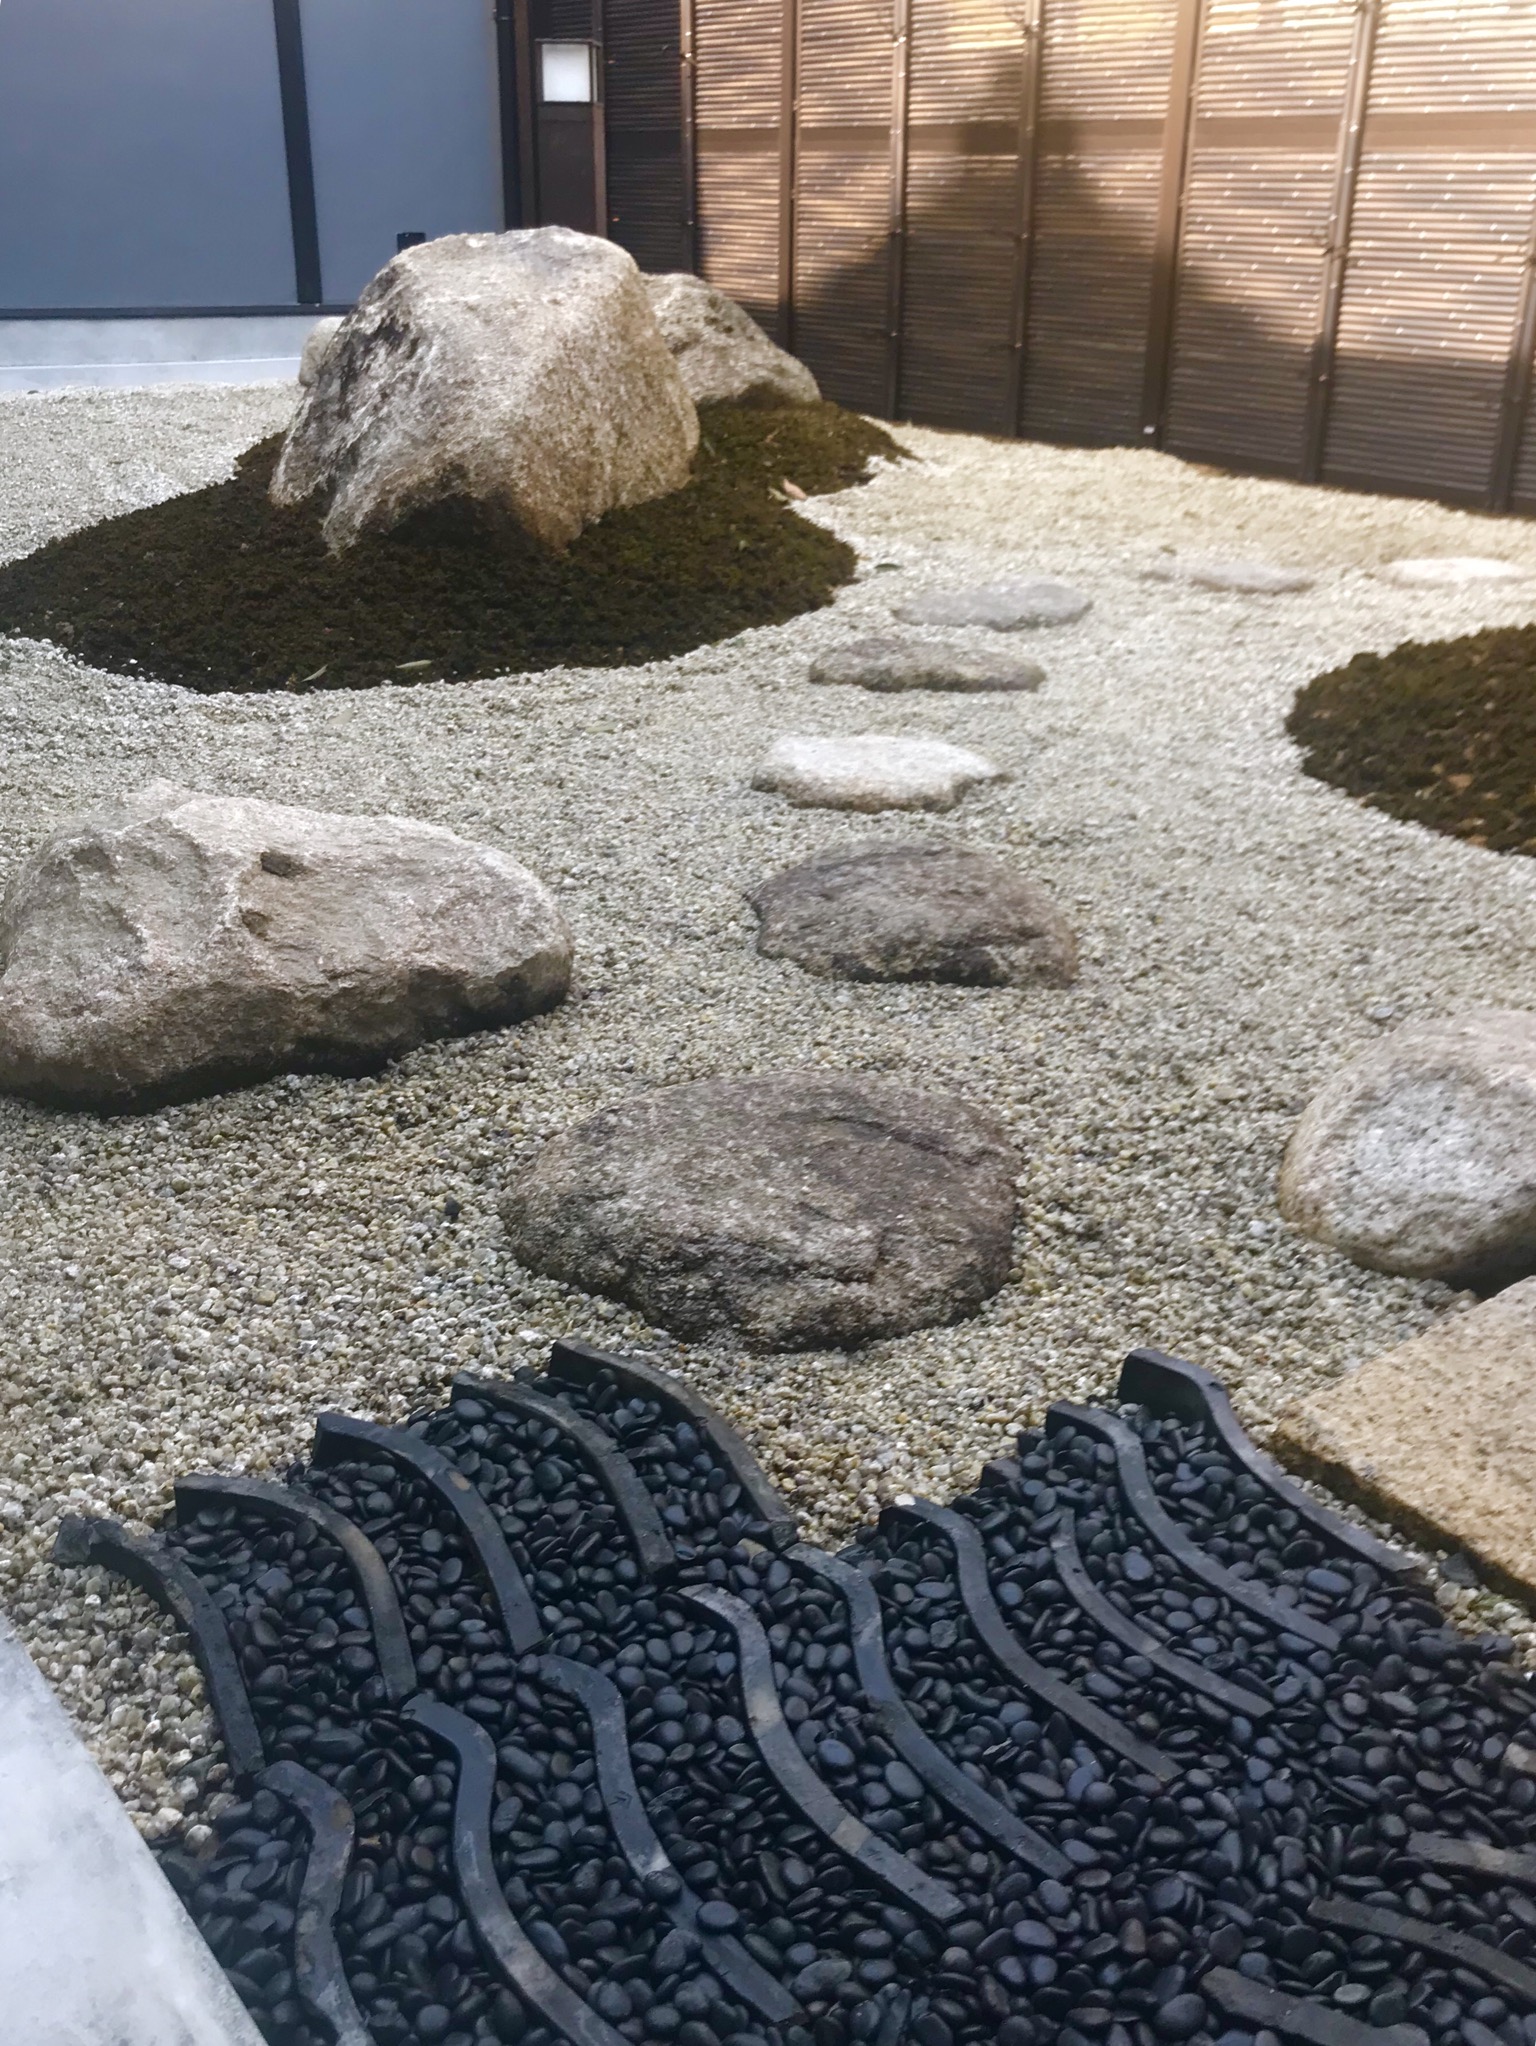 Diyで日本庭園は作れる 和風な庭園をつくるときのポイント 揖斐川庭石センターblog